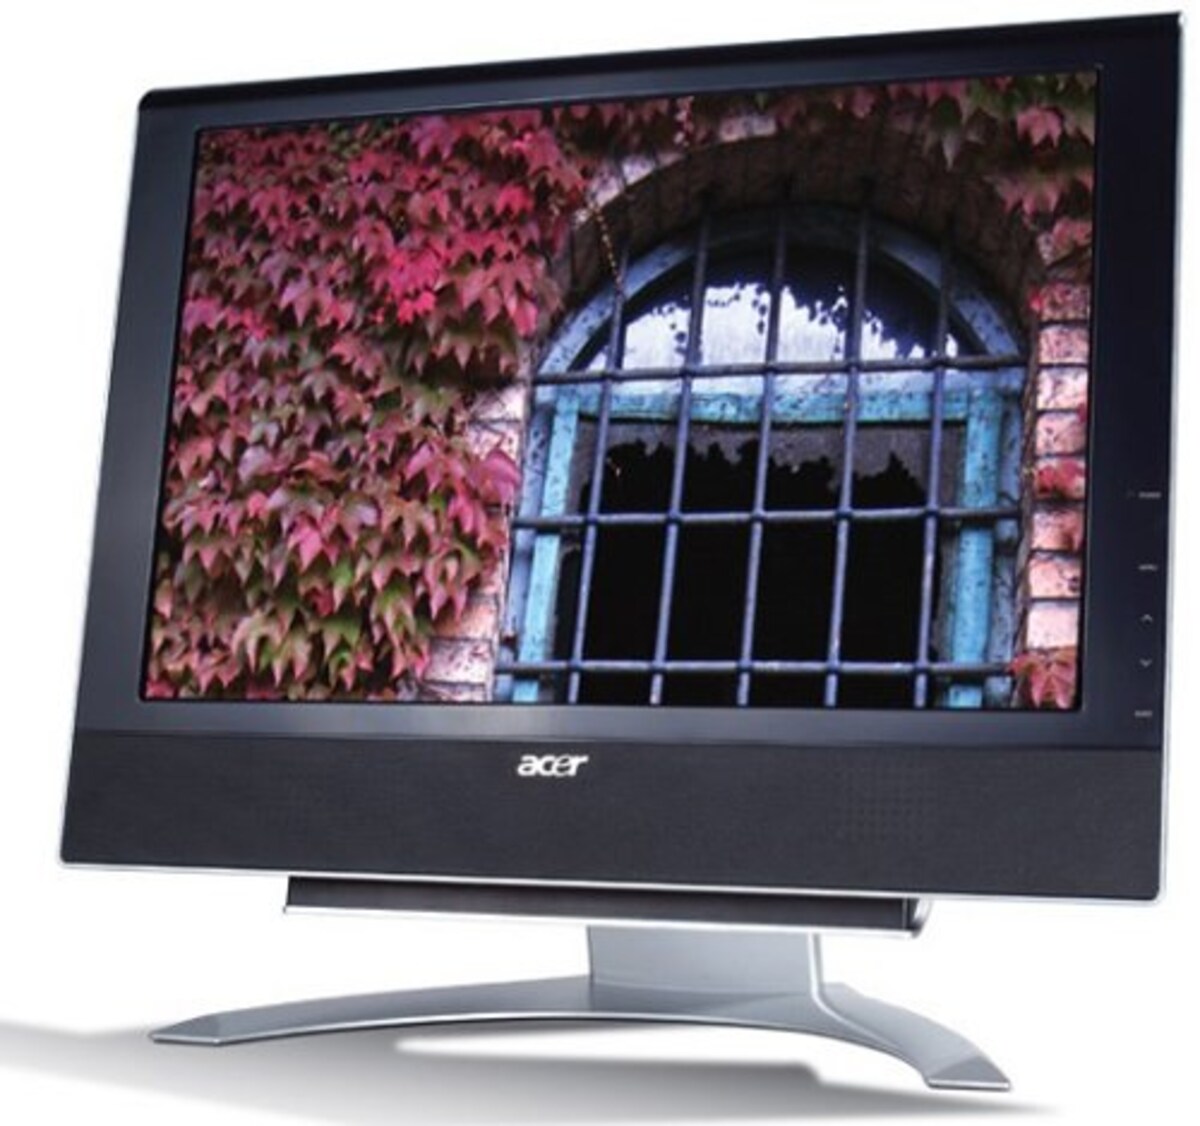 Acer 20インチワイド液晶ディスプレイ AL2032W